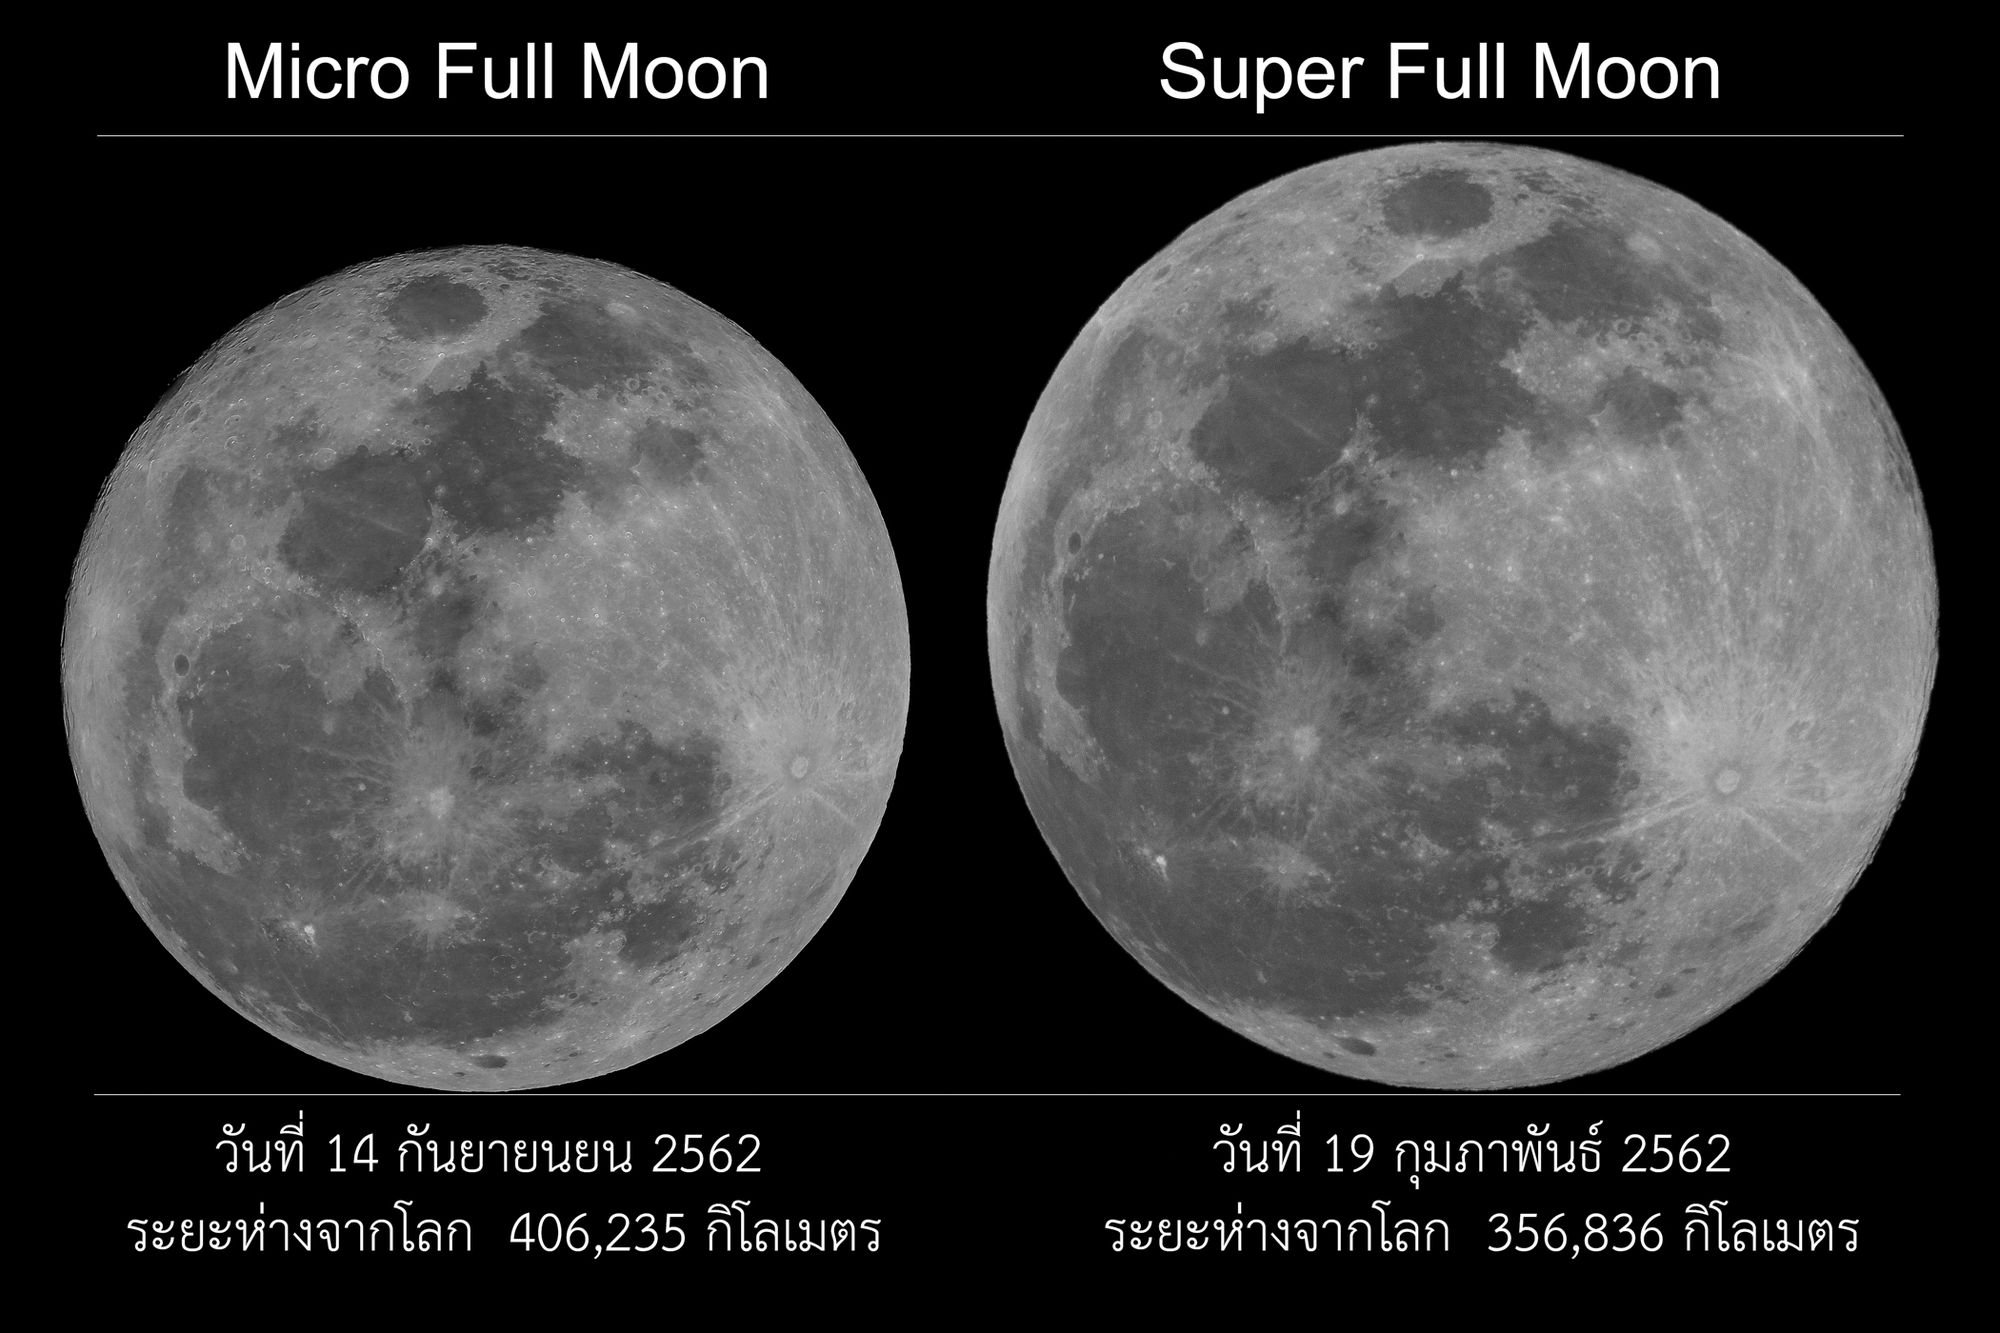 ภาพถ่าย Micro Full Moon ของปี 2562